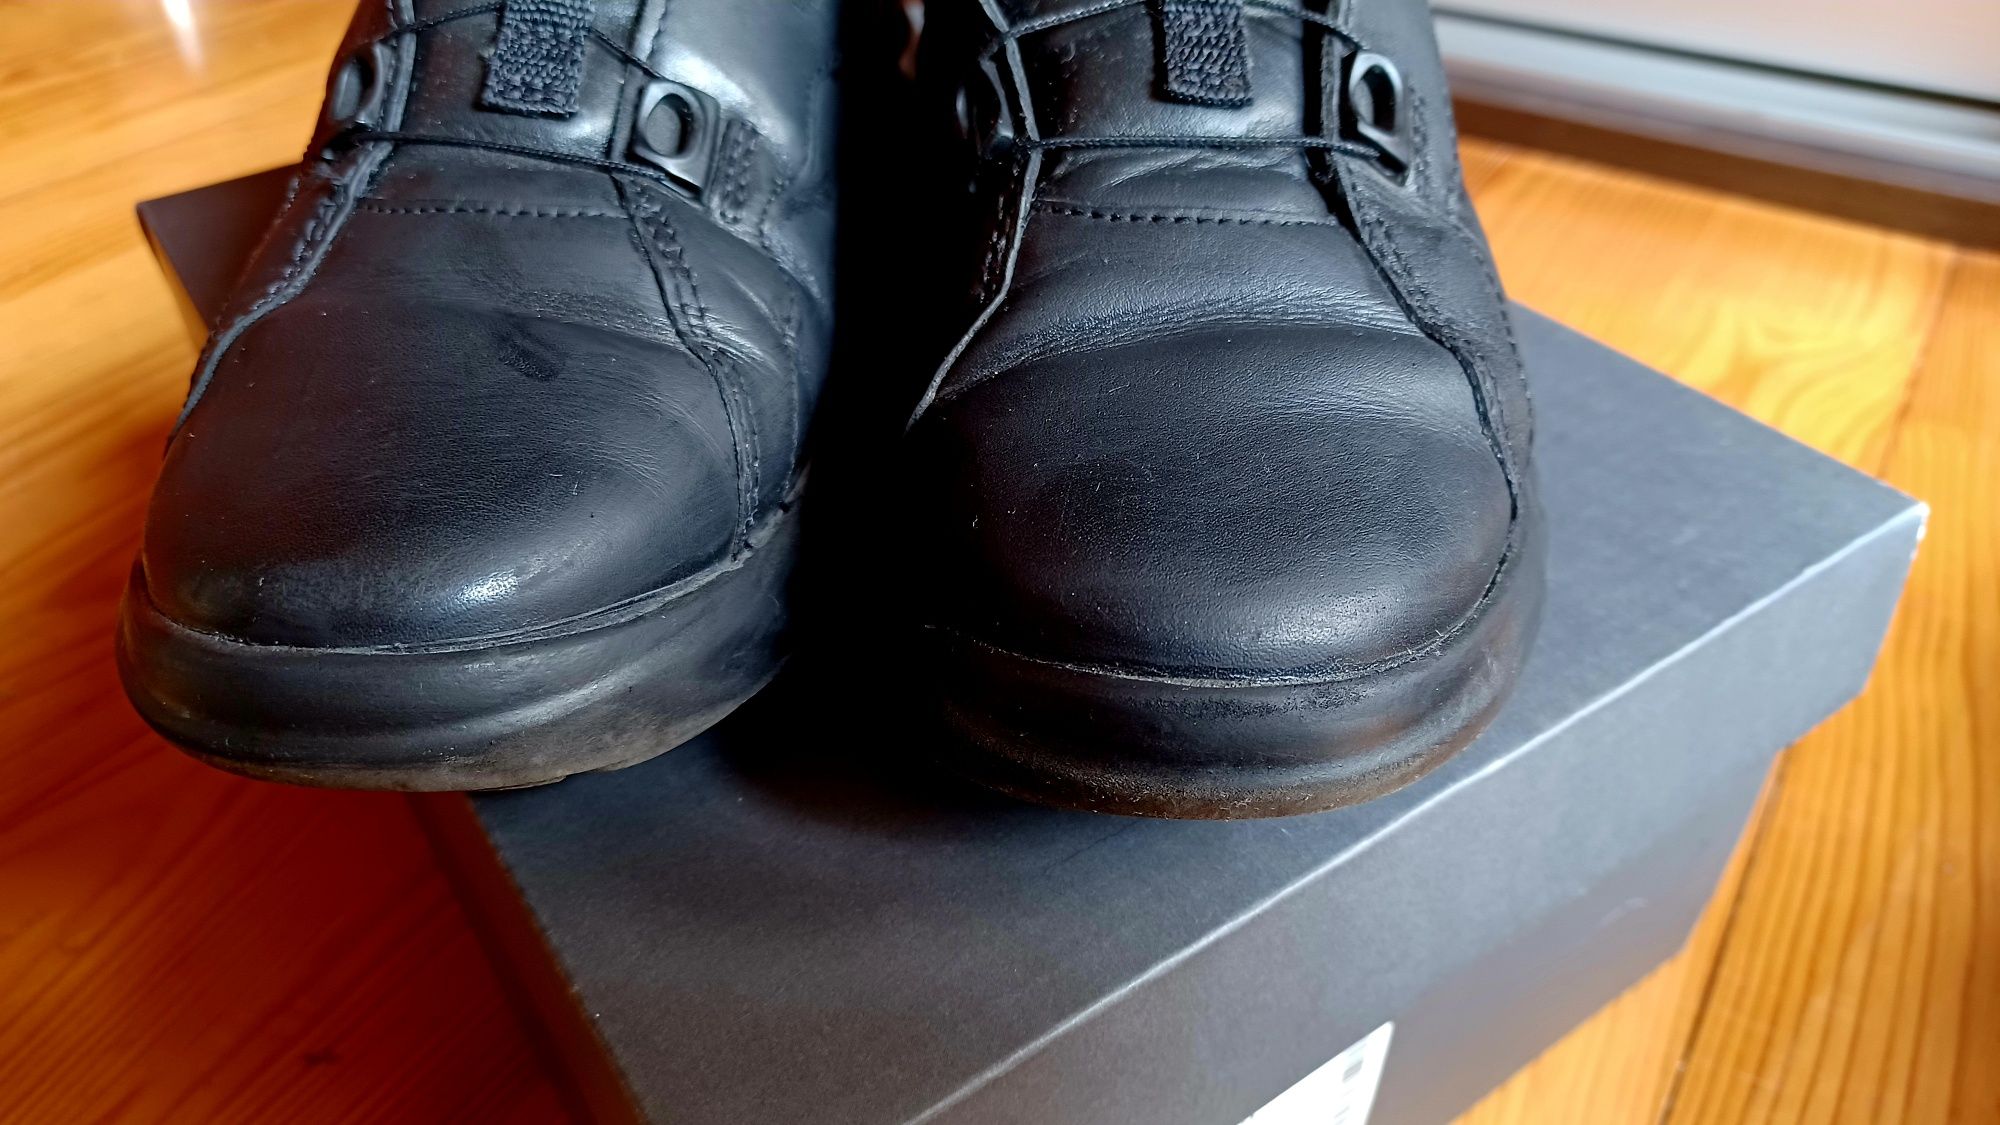 Buty dziecięce Ecco, skórzane sneakersy, Boa, komunia, zakończenie rok